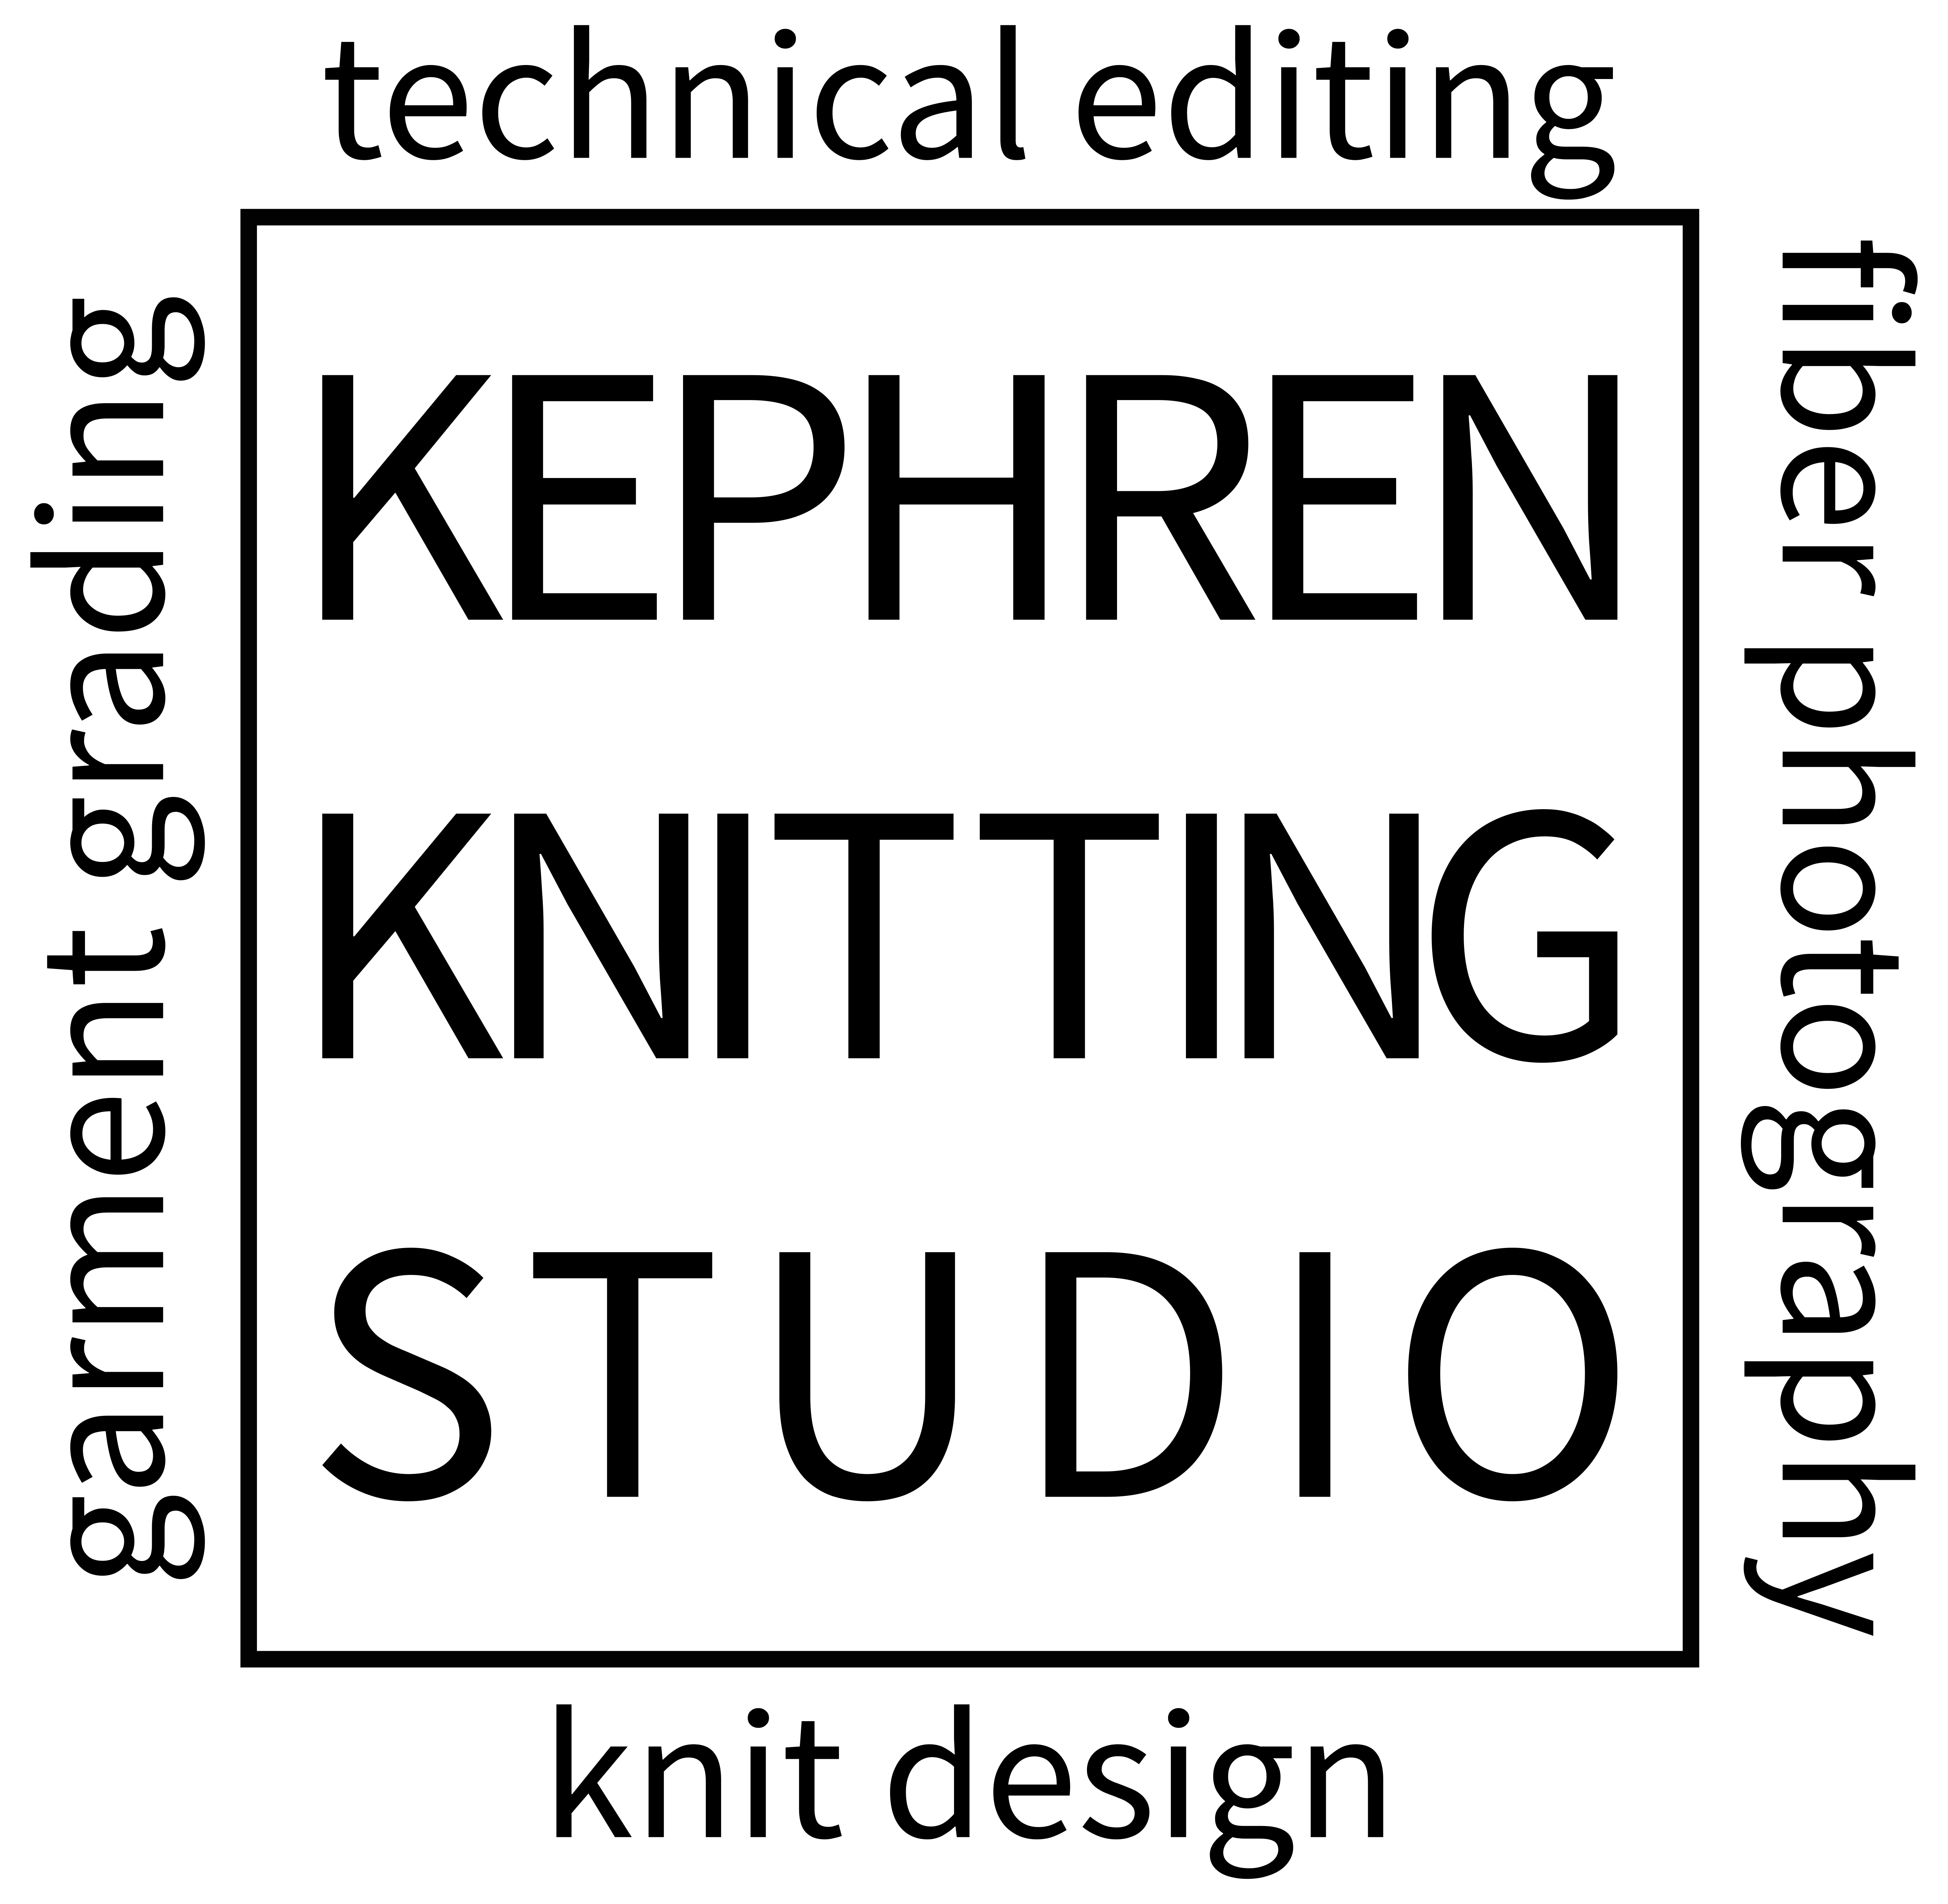 Kephren Knitting Studio